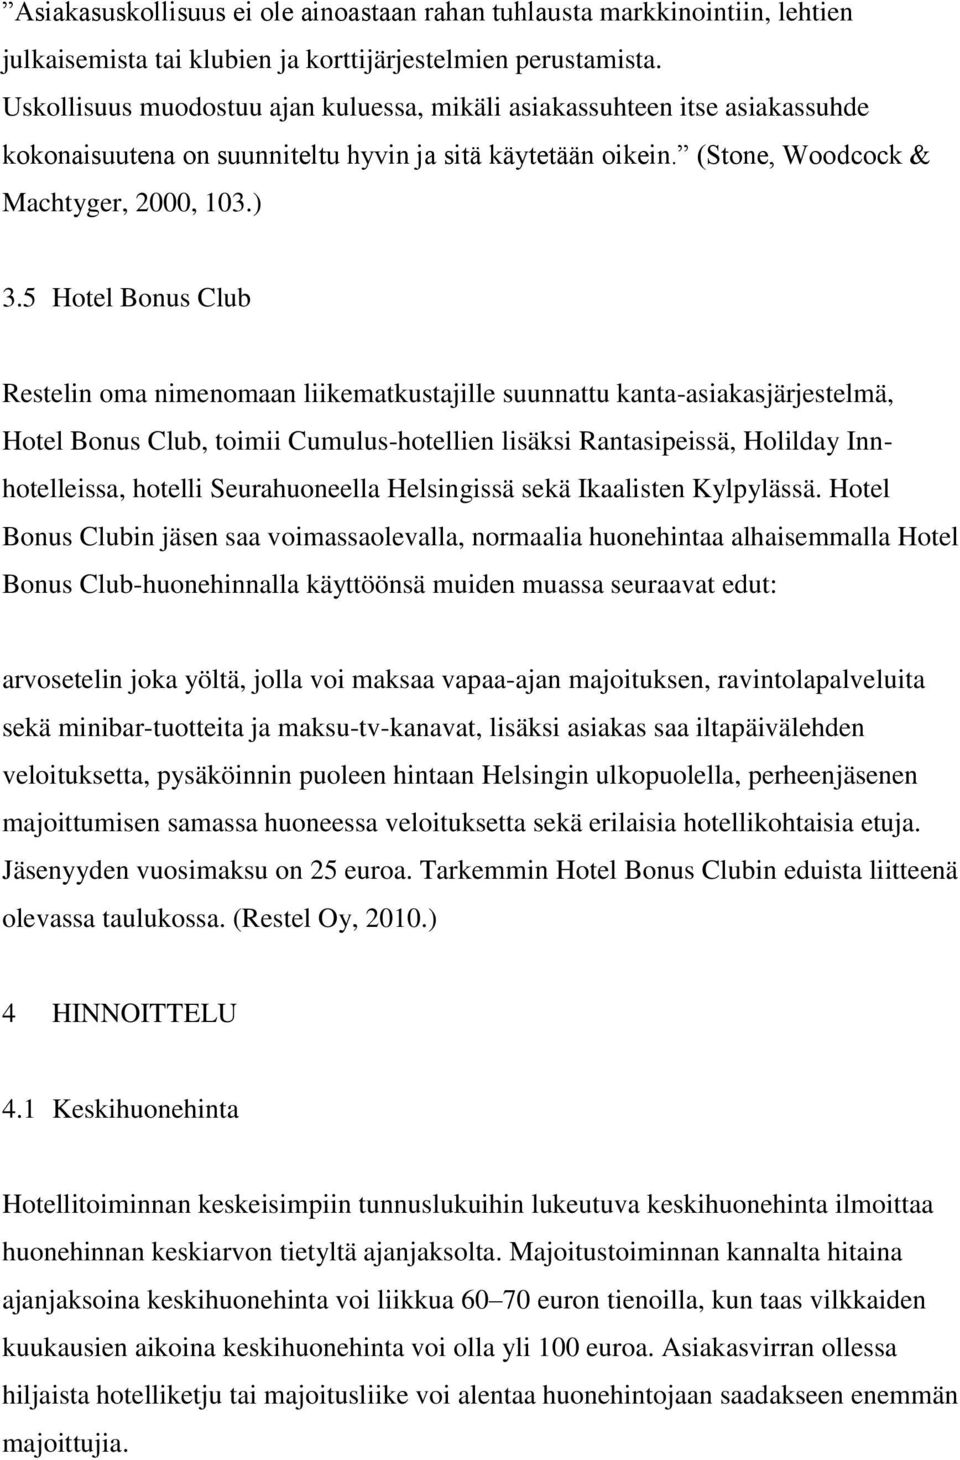 5 Hotel Bonus Club Restelin oma nimenomaan liikematkustajille suunnattu kanta-asiakasjärjestelmä, Hotel Bonus Club, toimii Cumulus-hotellien lisäksi Rantasipeissä, Holilday Innhotelleissa, hotelli